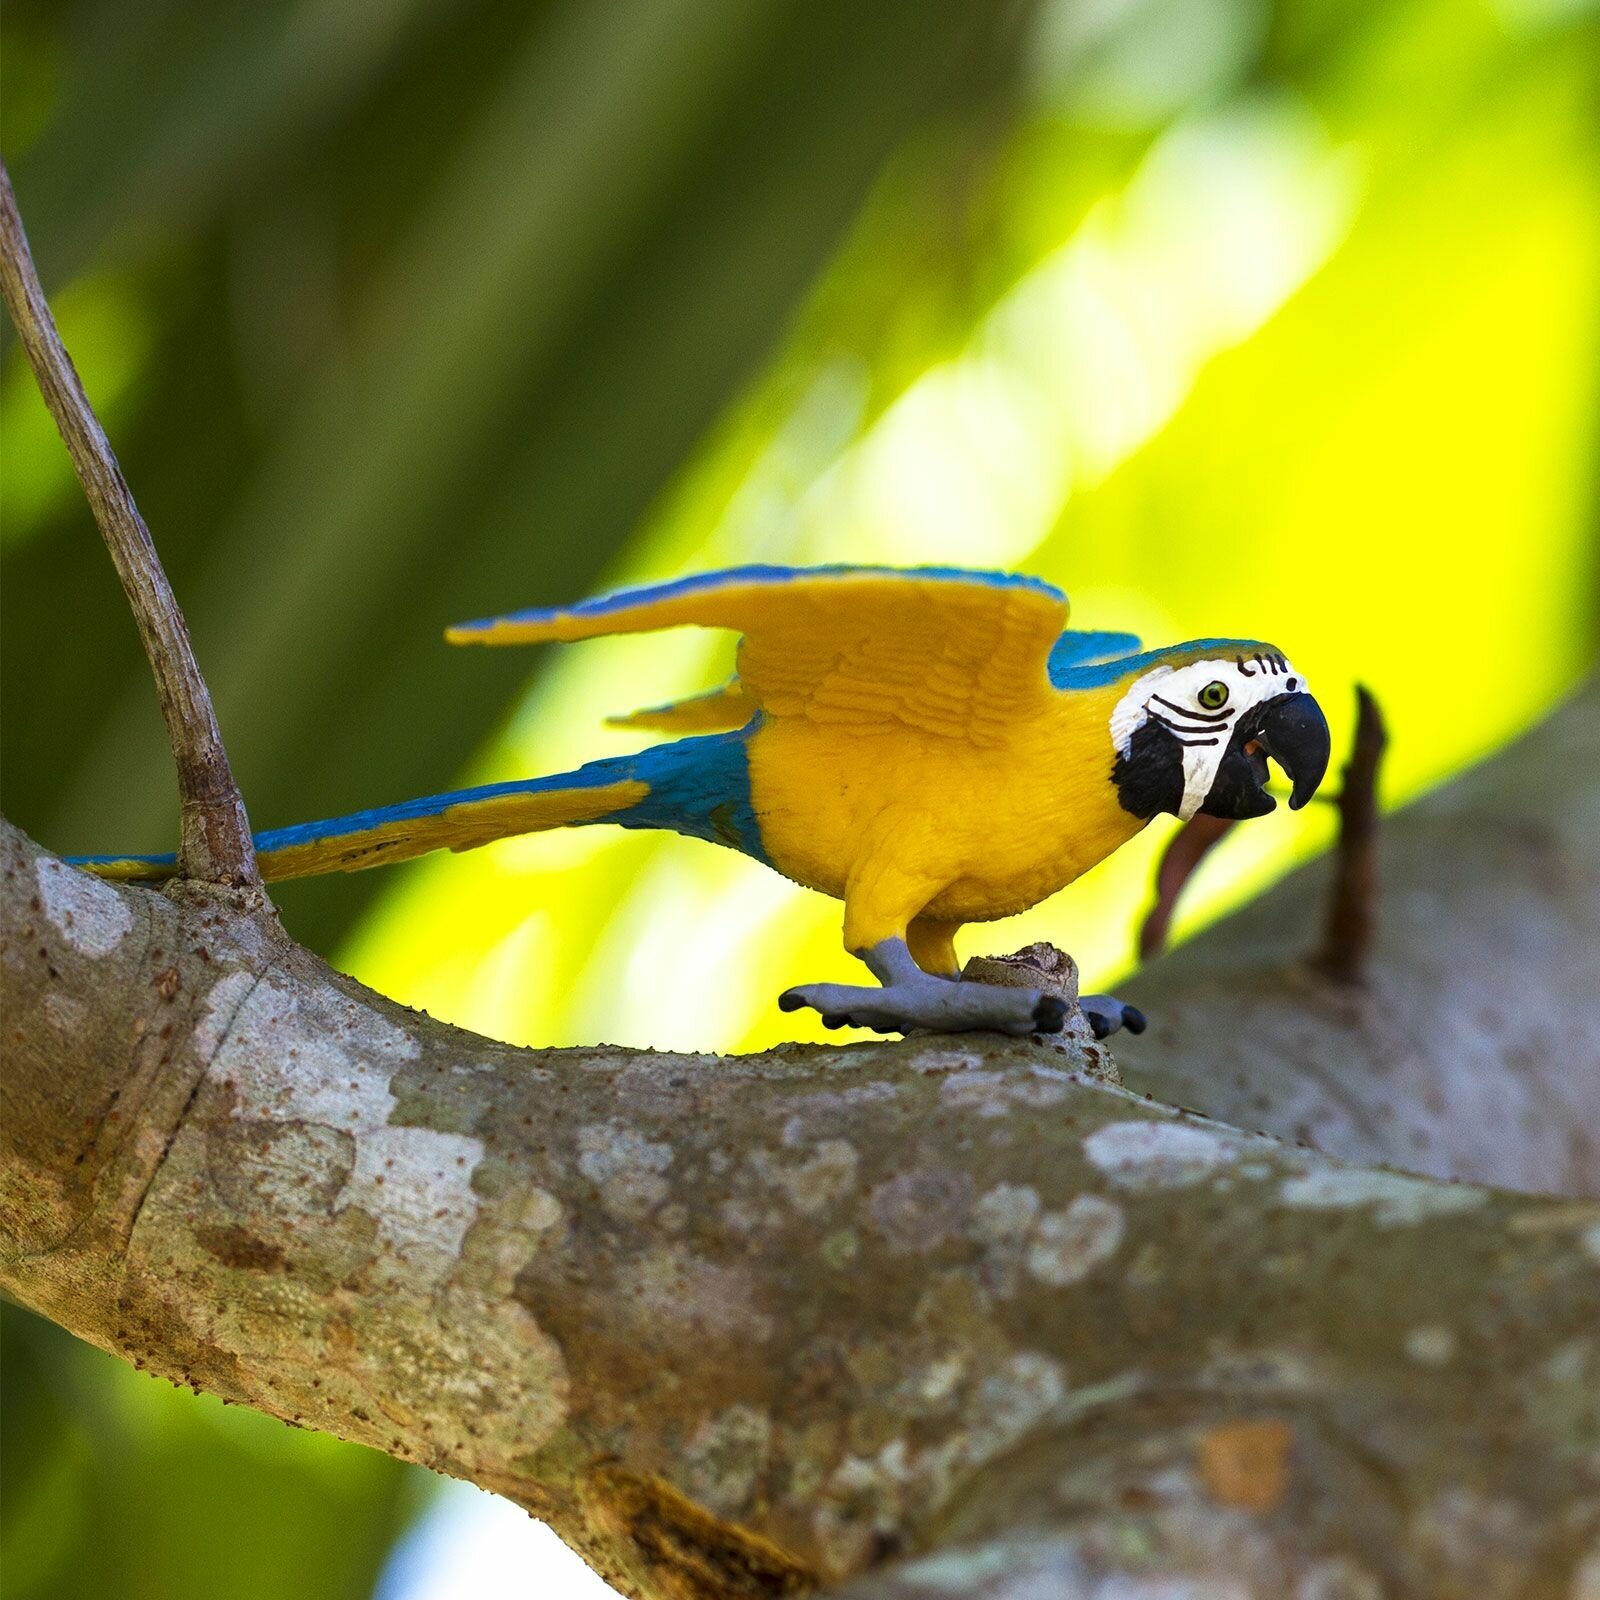 Фигурка птицы попугая Safari Ltd Сине-желтый ара, для детей, игрушка коллекционная, 264029